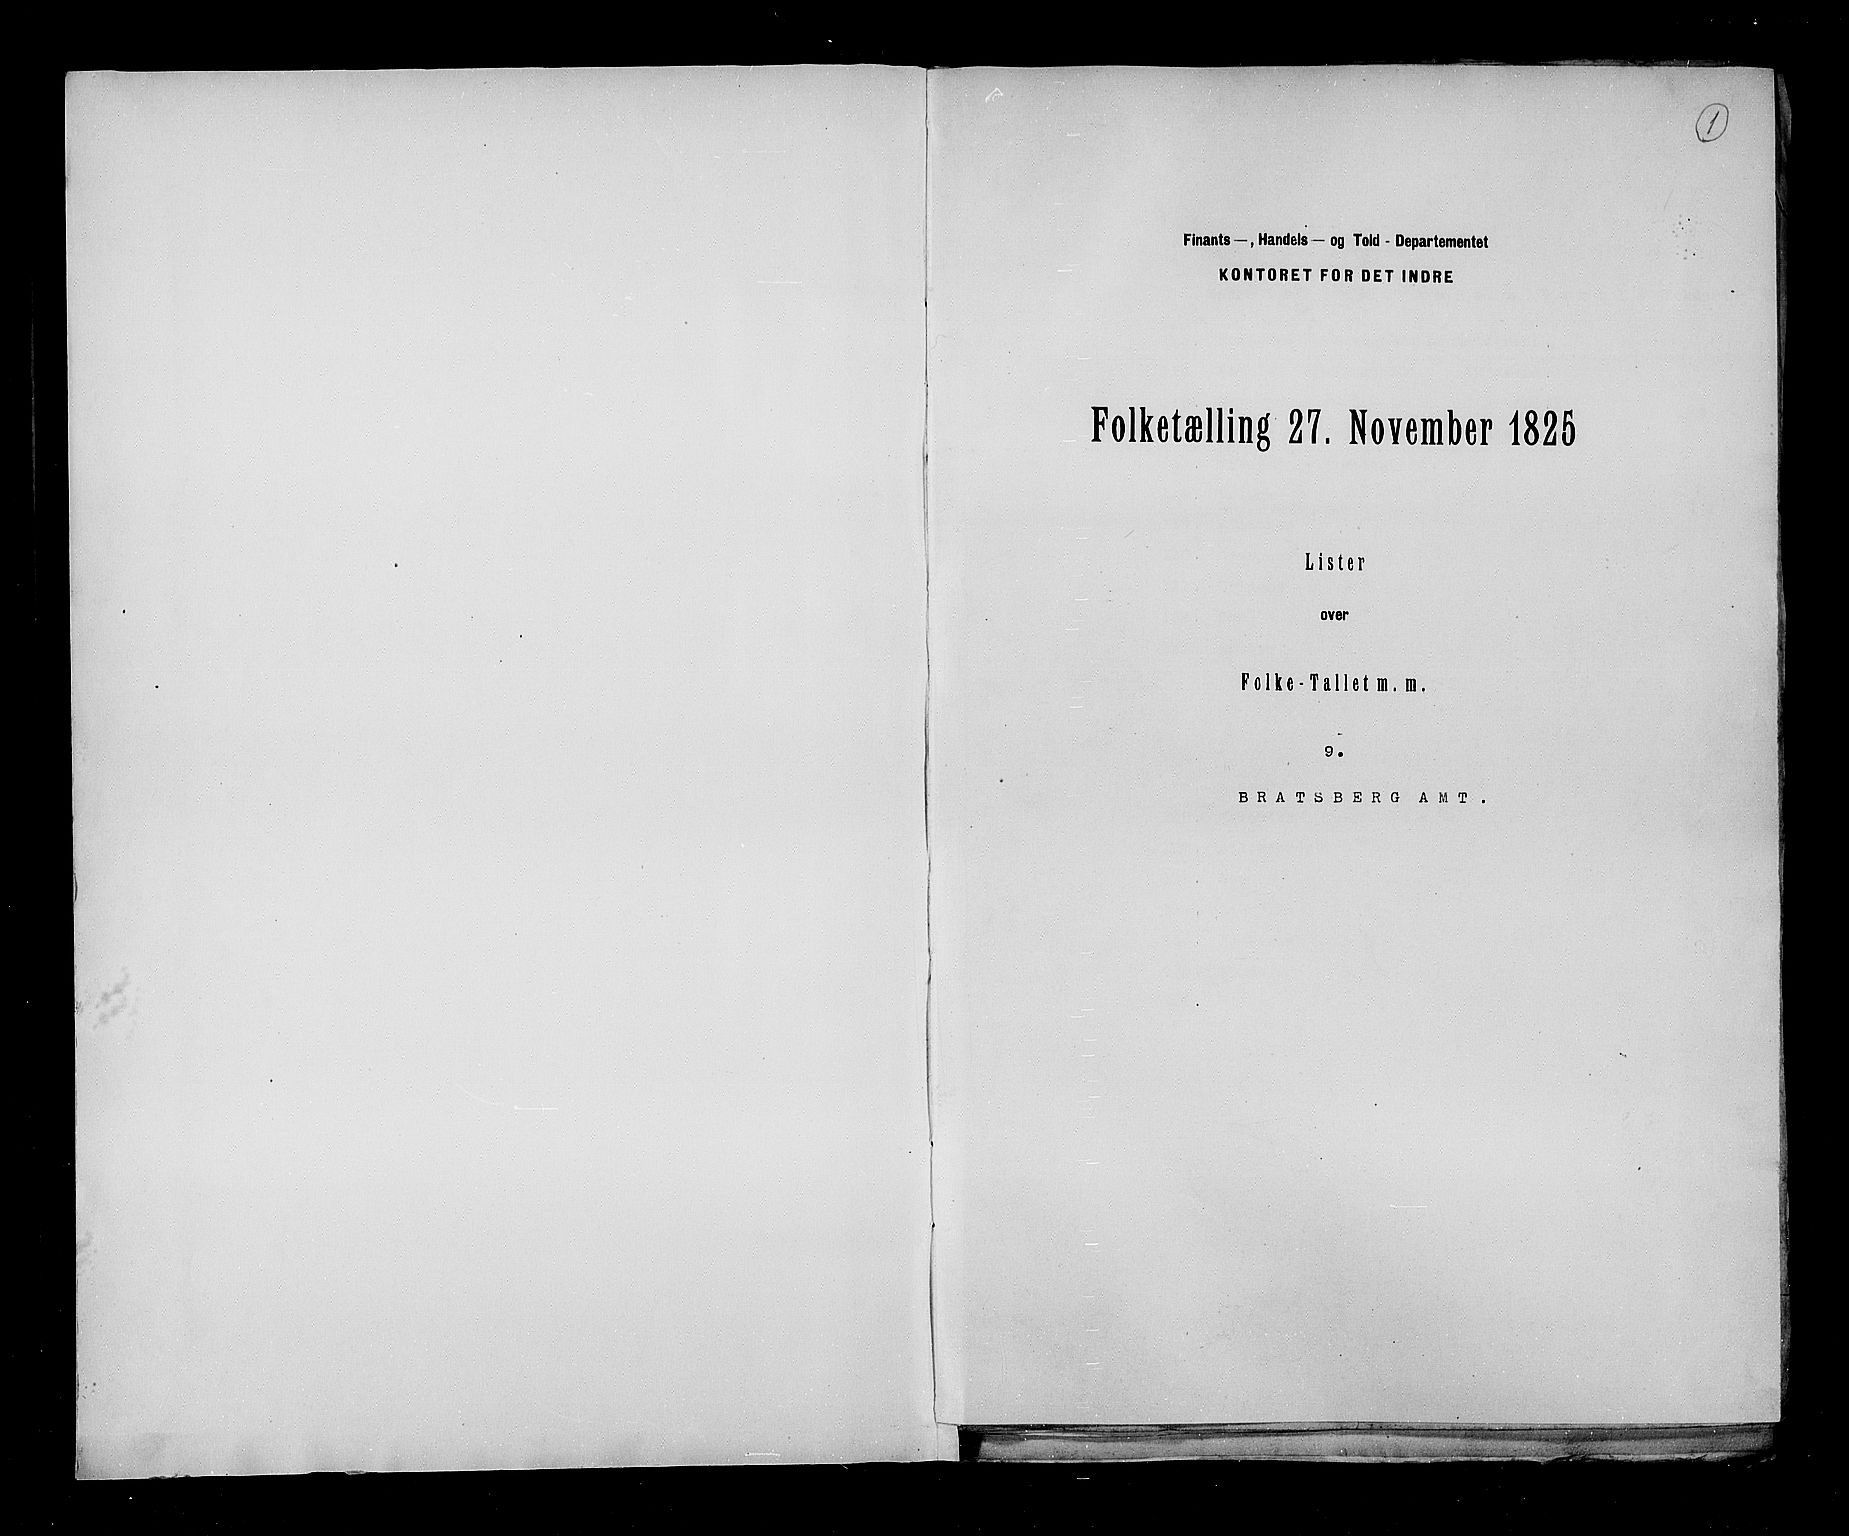 RA, Census 1825, vol. 9: Bratsberg amt, 1825, p. 1